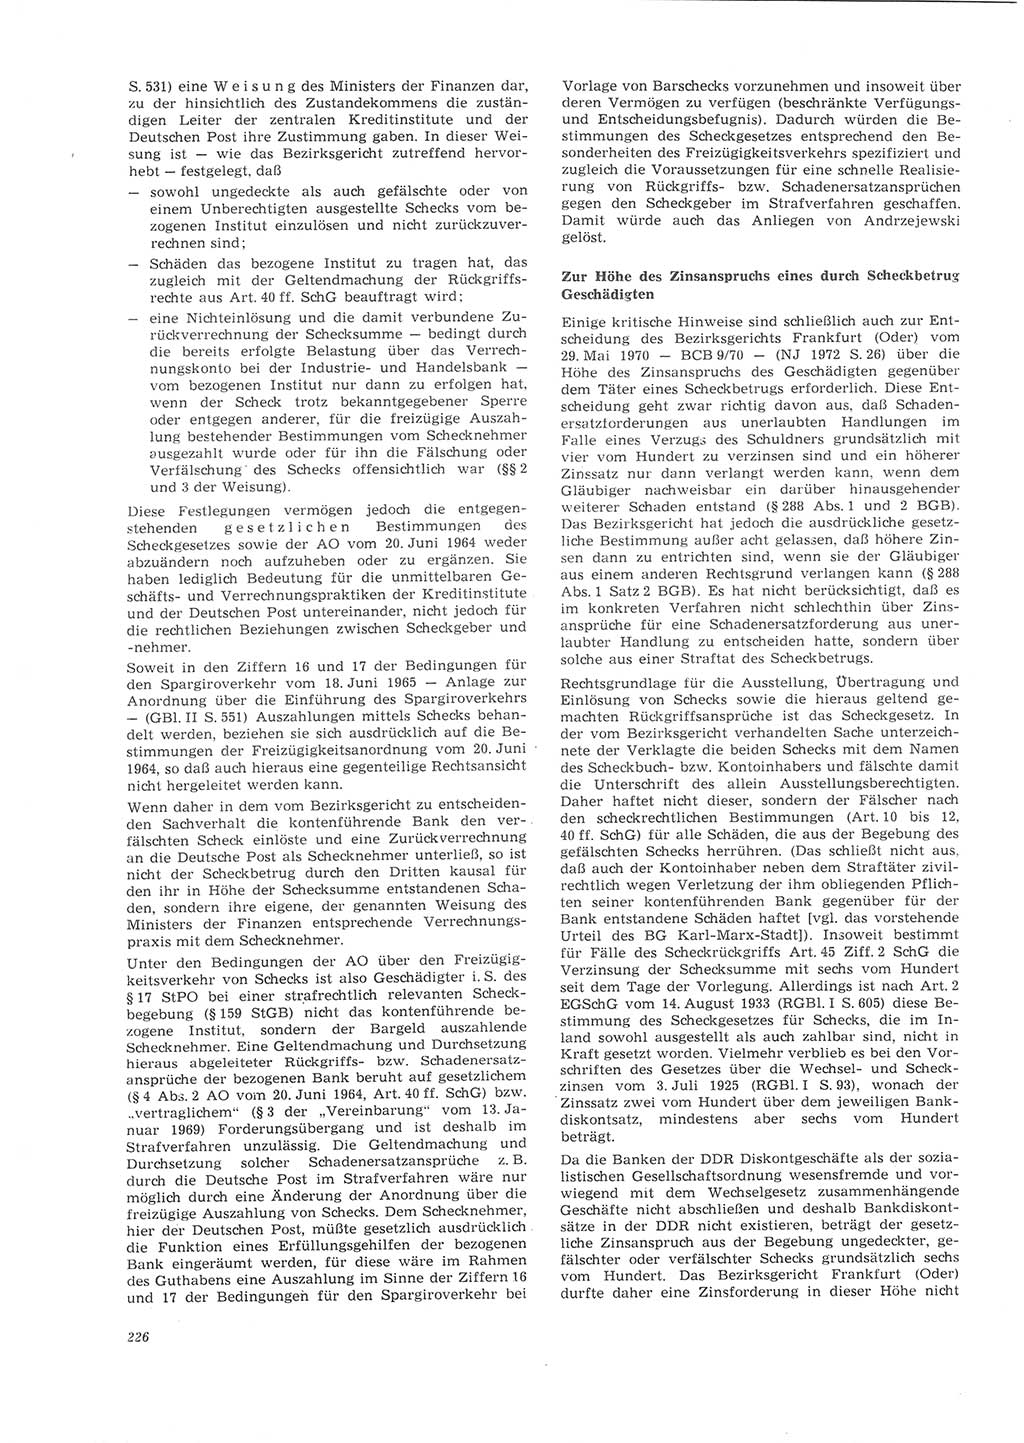 Neue Justiz (NJ), Zeitschrift für Recht und Rechtswissenschaft [Deutsche Demokratische Republik (DDR)], 26. Jahrgang 1972, Seite 226 (NJ DDR 1972, S. 226)